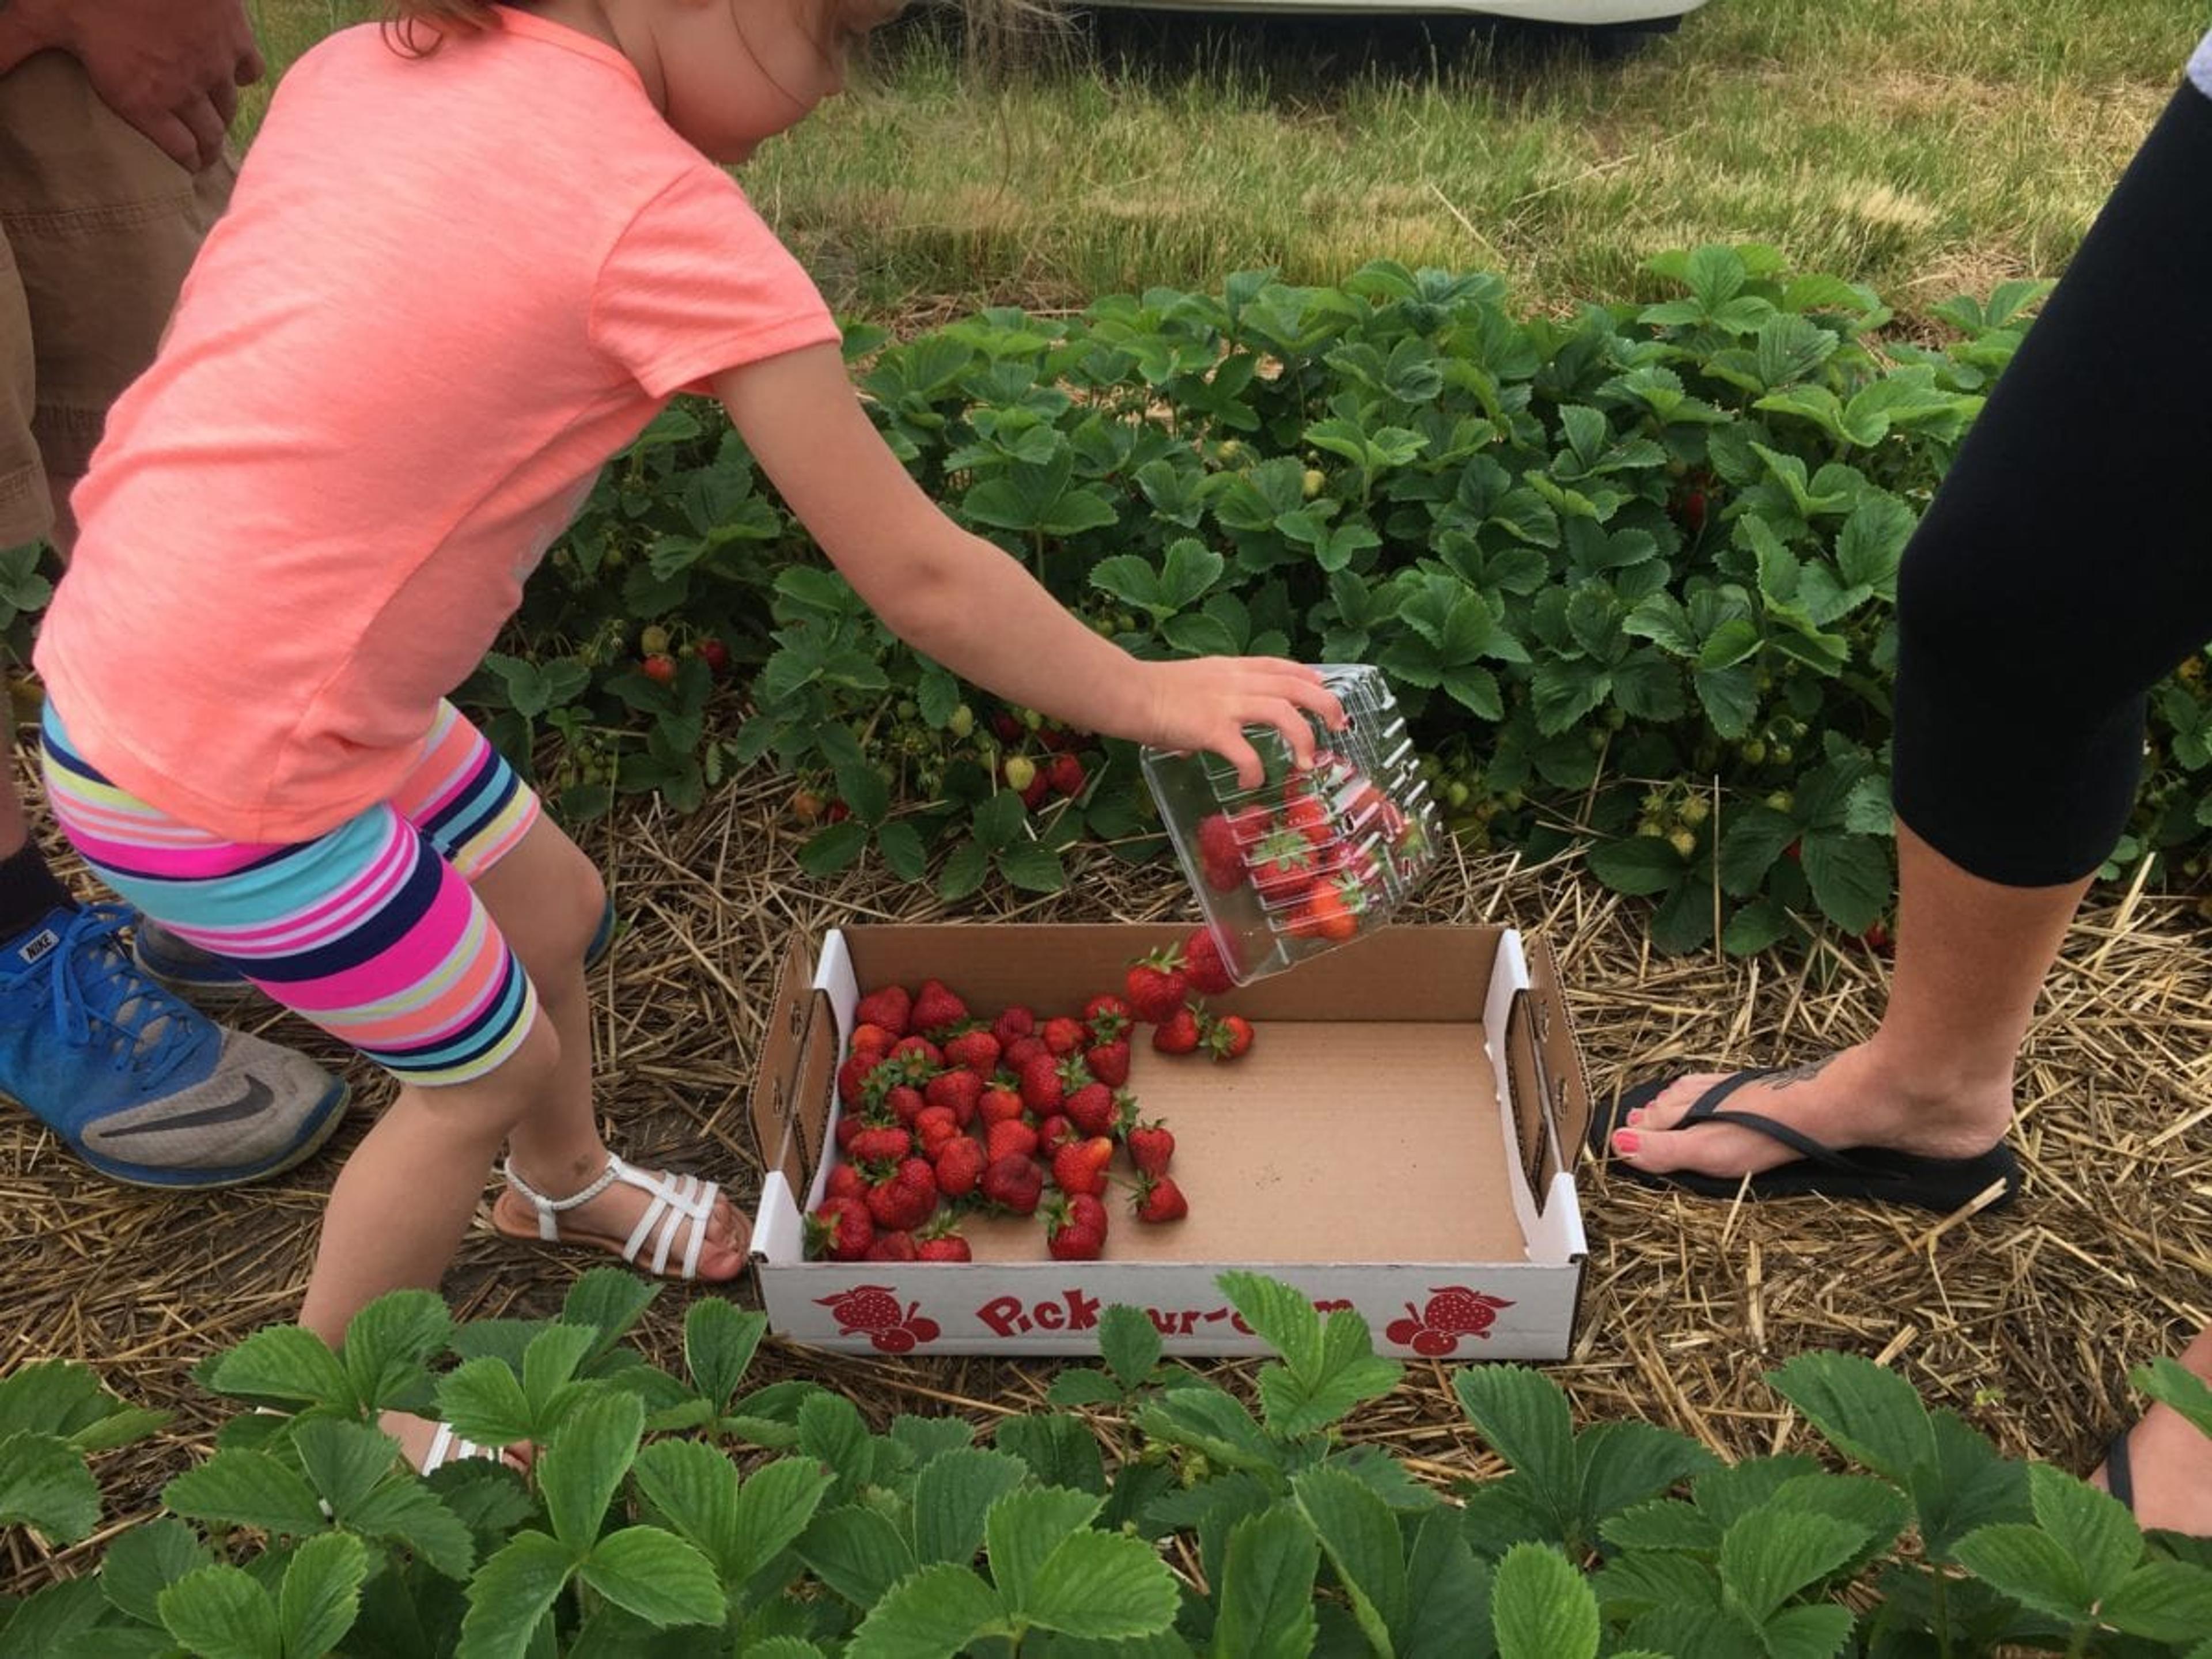 little girl dumping strawberries